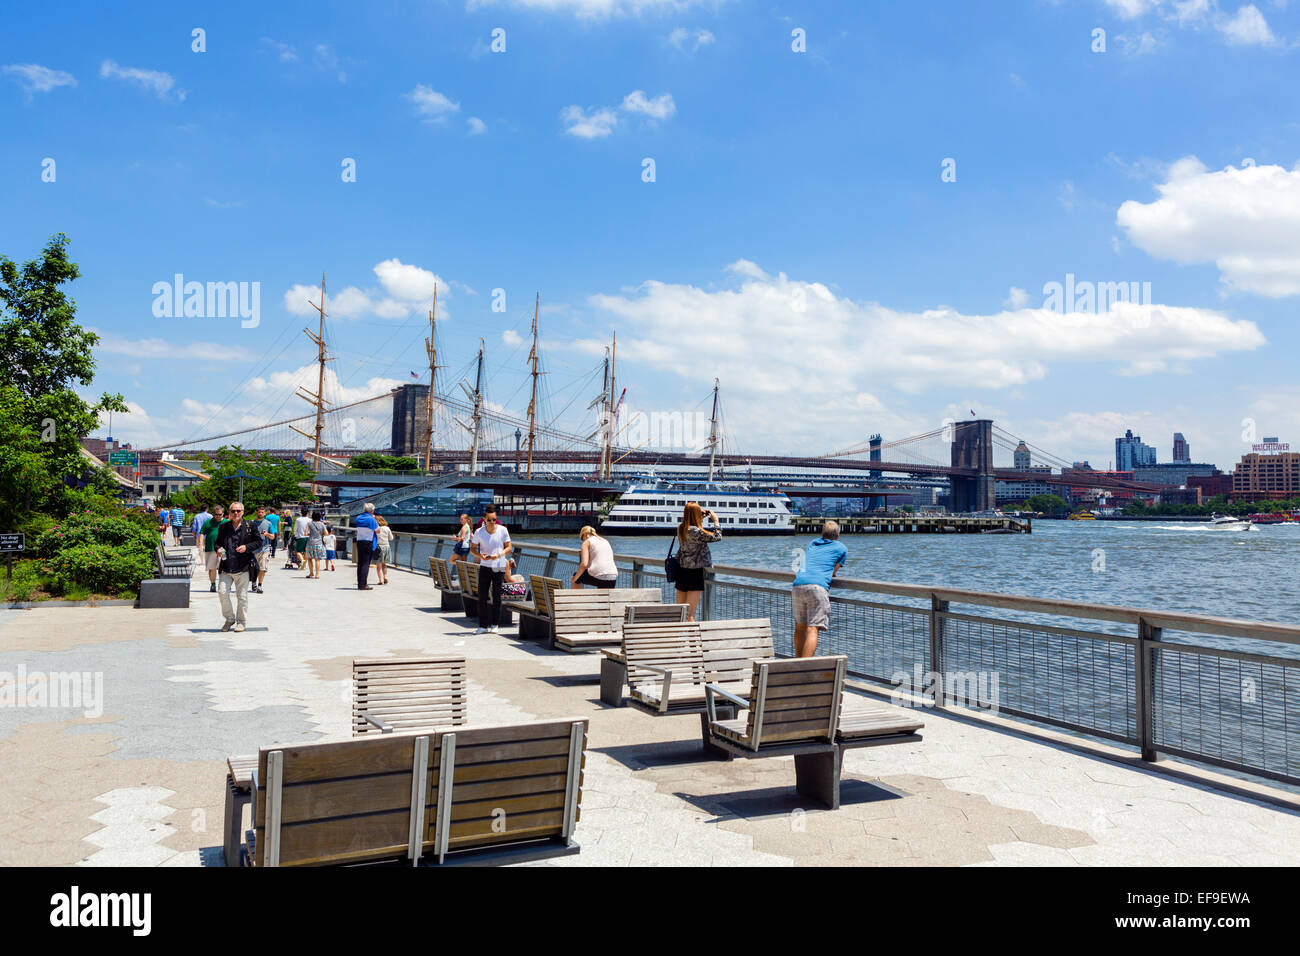 L'East River Esplanade guardando verso il ponte di Brooklyn e South Street Seaport, la parte inferiore di Manhattan, New York City, NY, STATI UNITI D'AMERICA Foto Stock